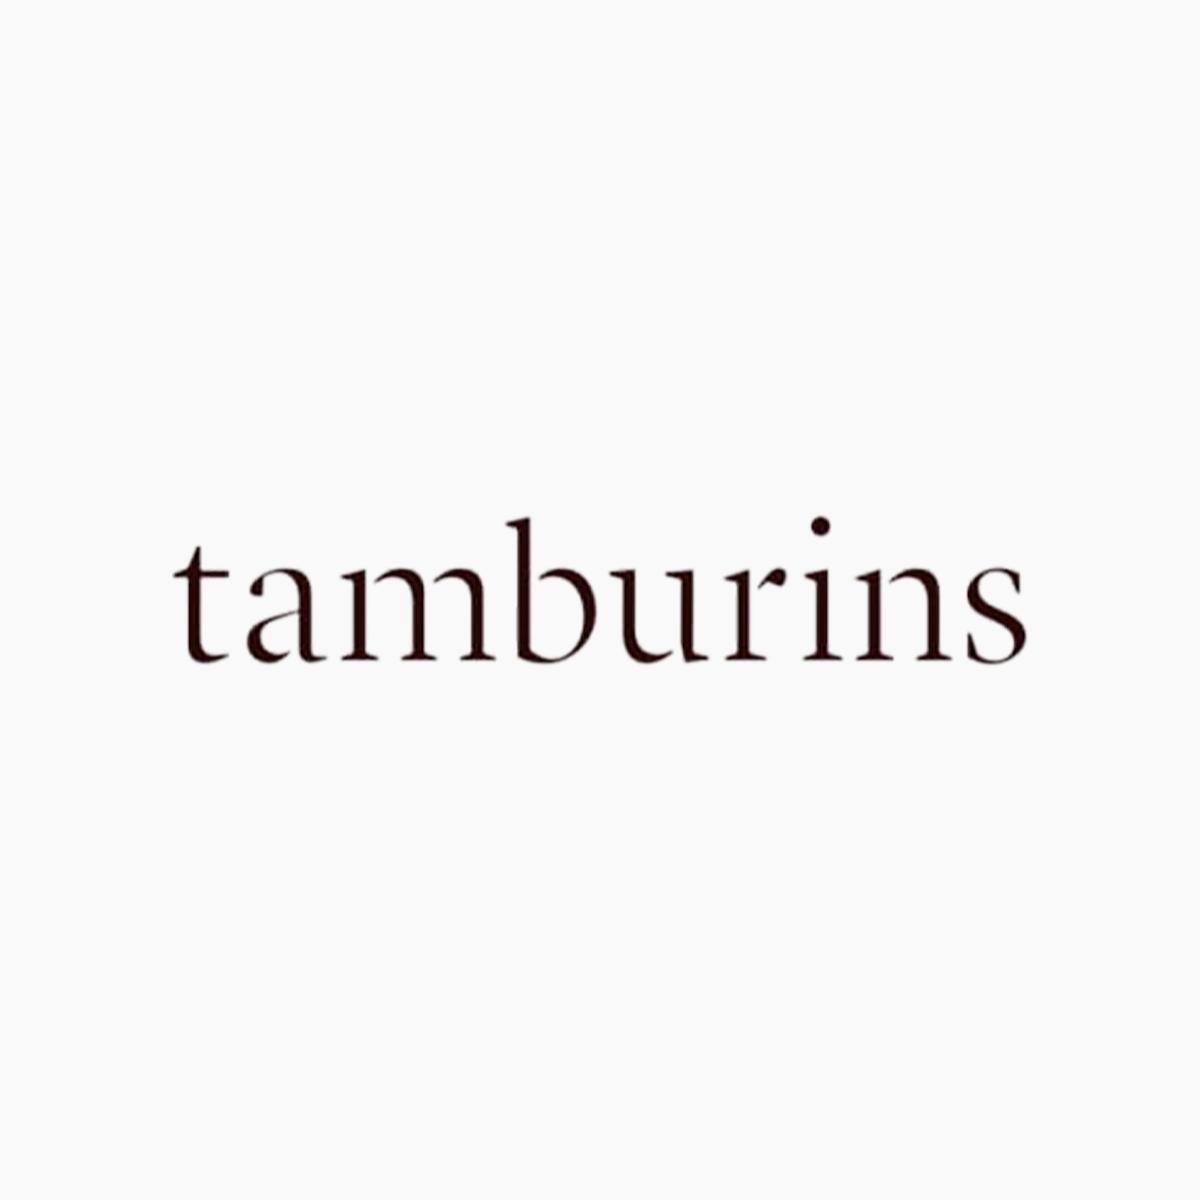 Tamburins